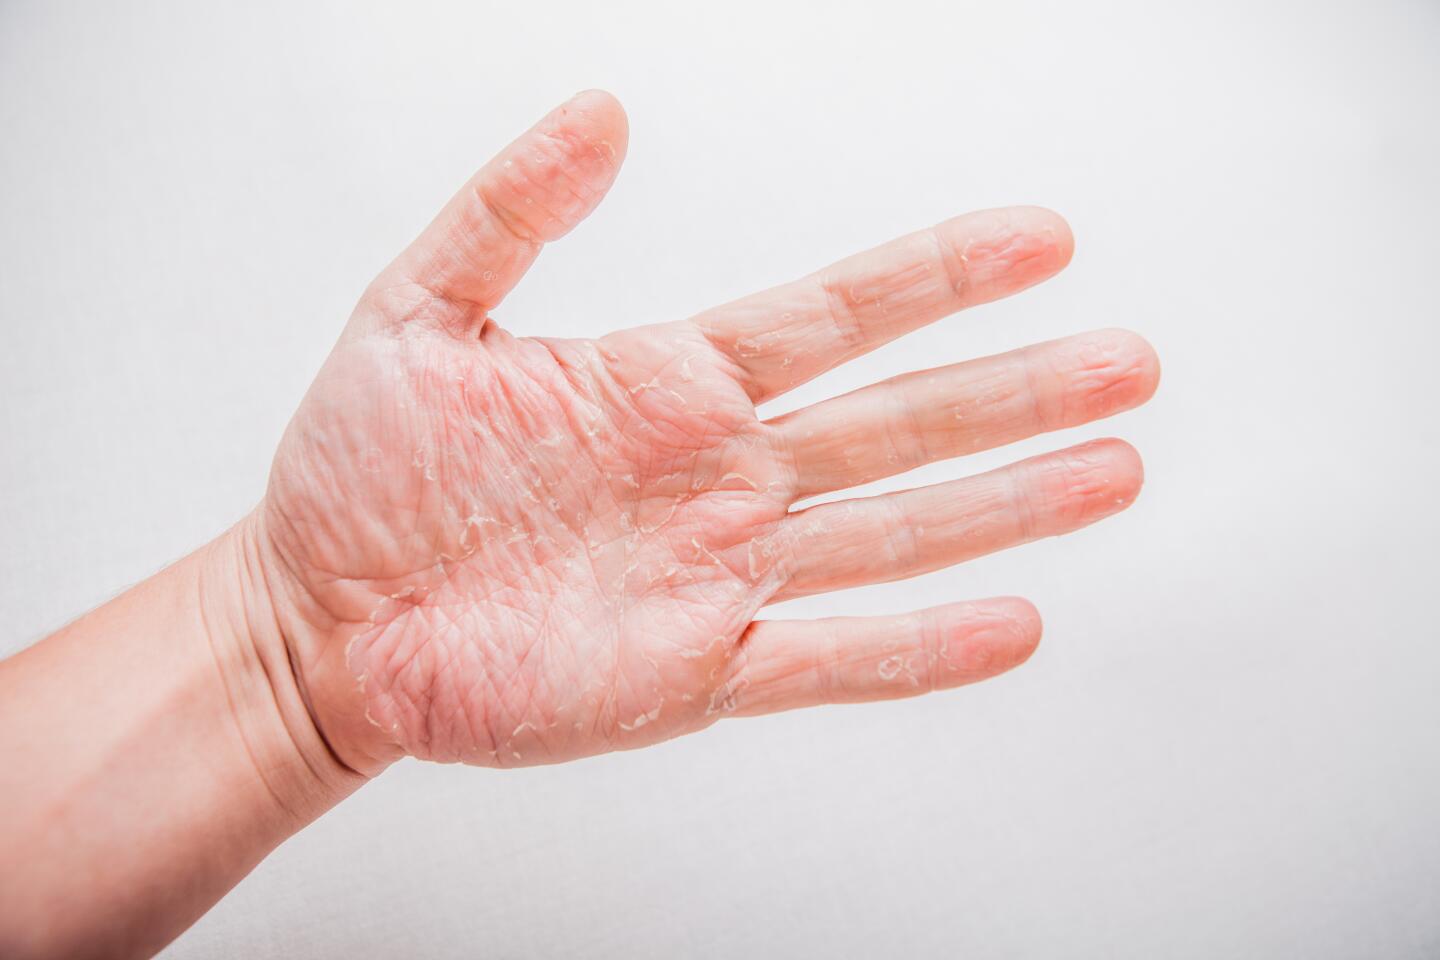 pourquoi-l-eczema-altere-t-il-la-barriere-cutanee-ducray-upper-image